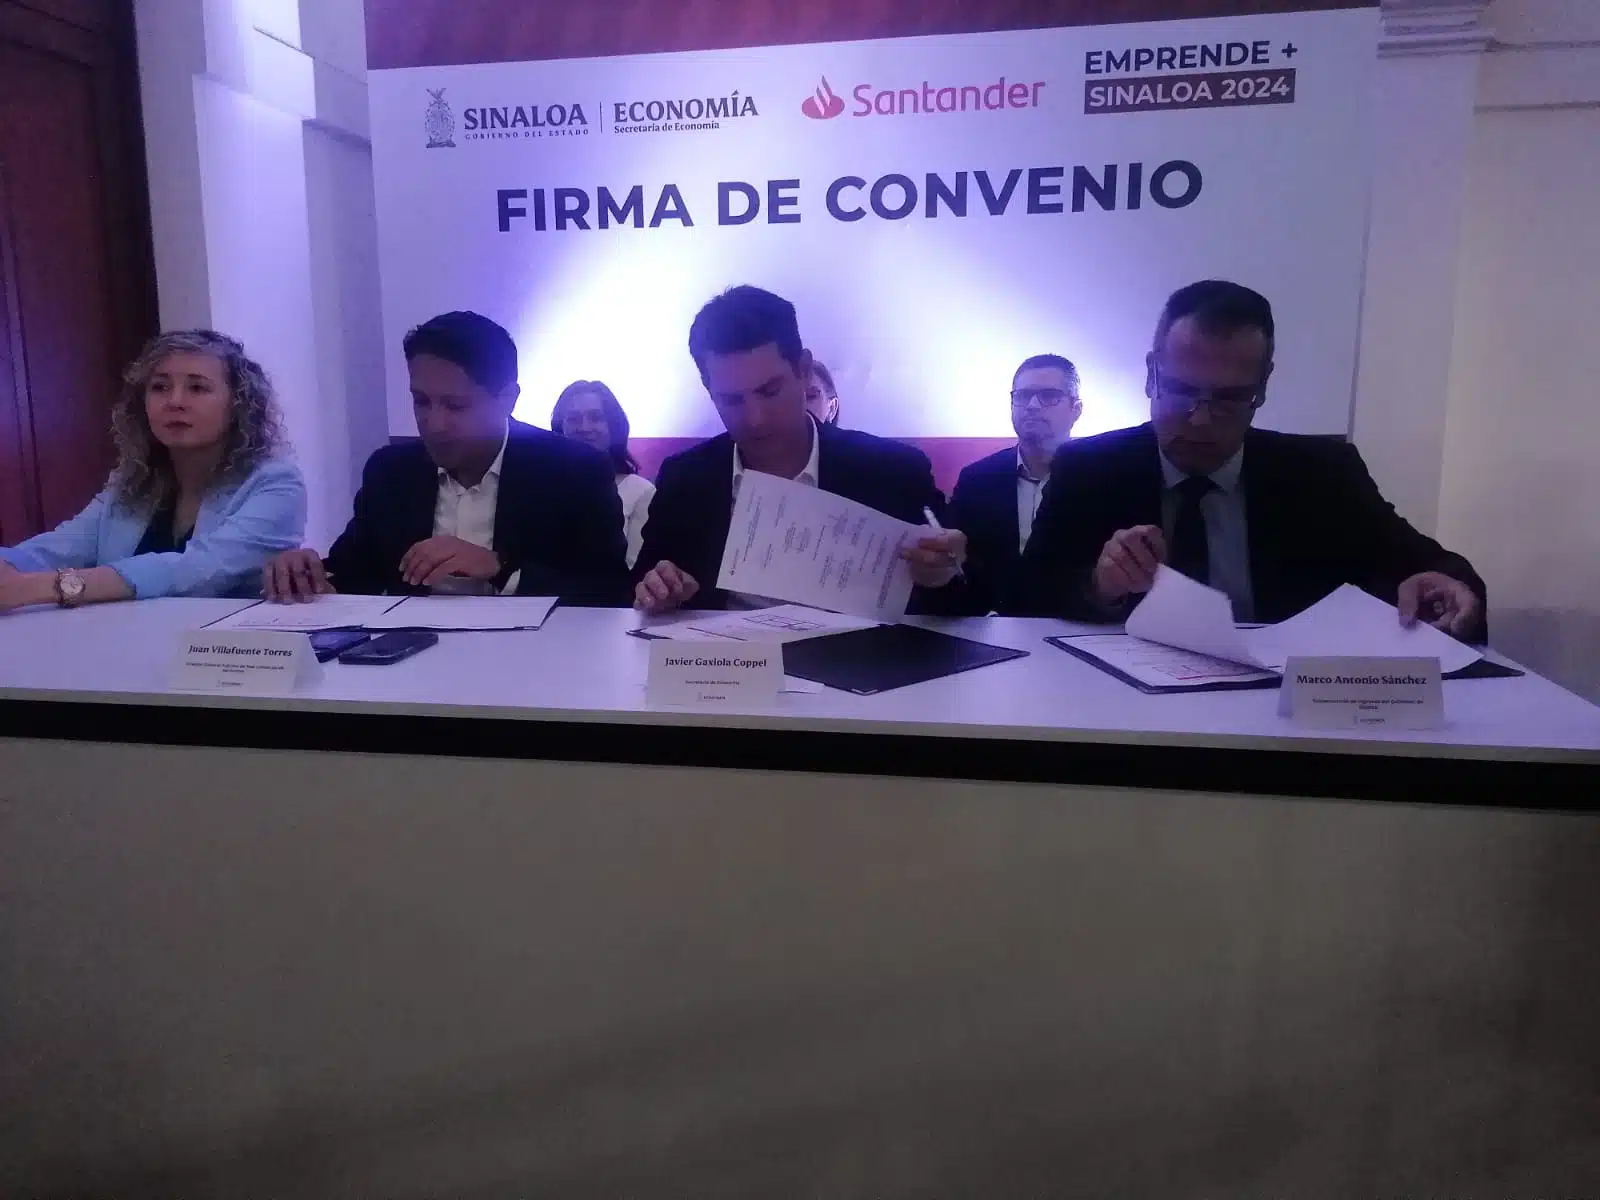 Javier Gaxiola Coppel, secretario de Economía, firmando el convenio con Santander